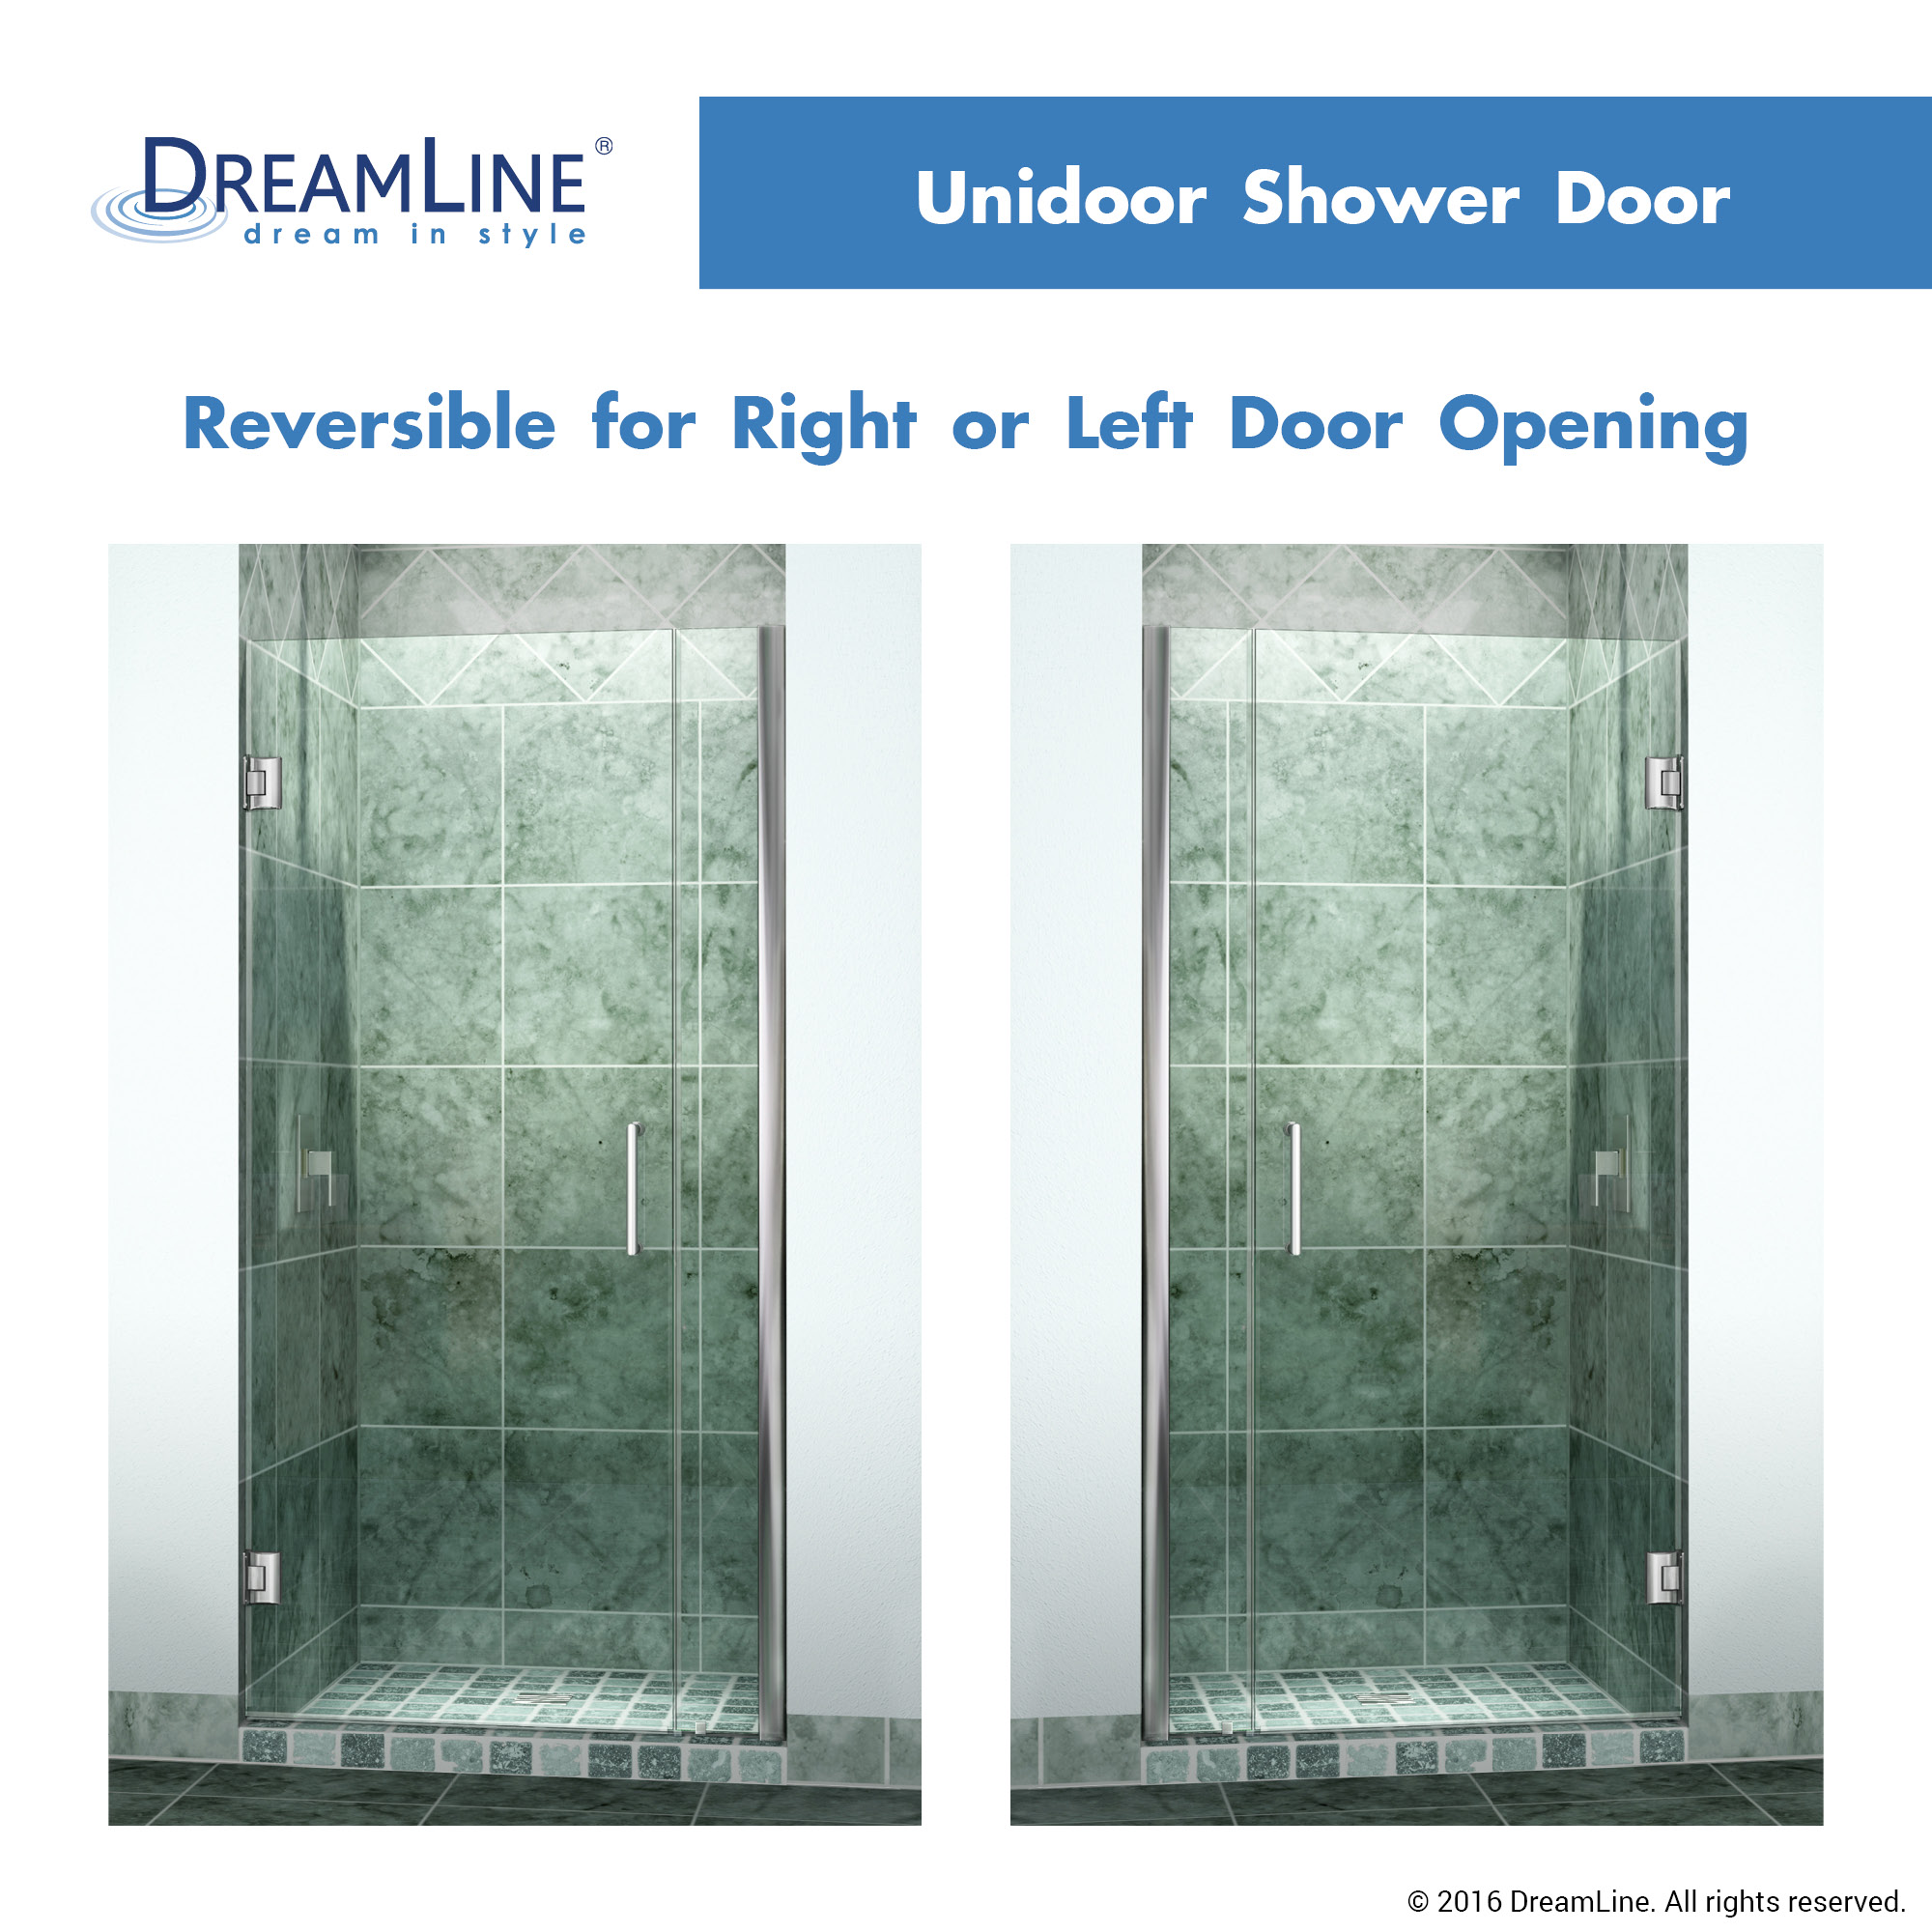 DreamLine SHDR-20367210-04 Brushed Nickel 36-37" Adjustable Shower Door